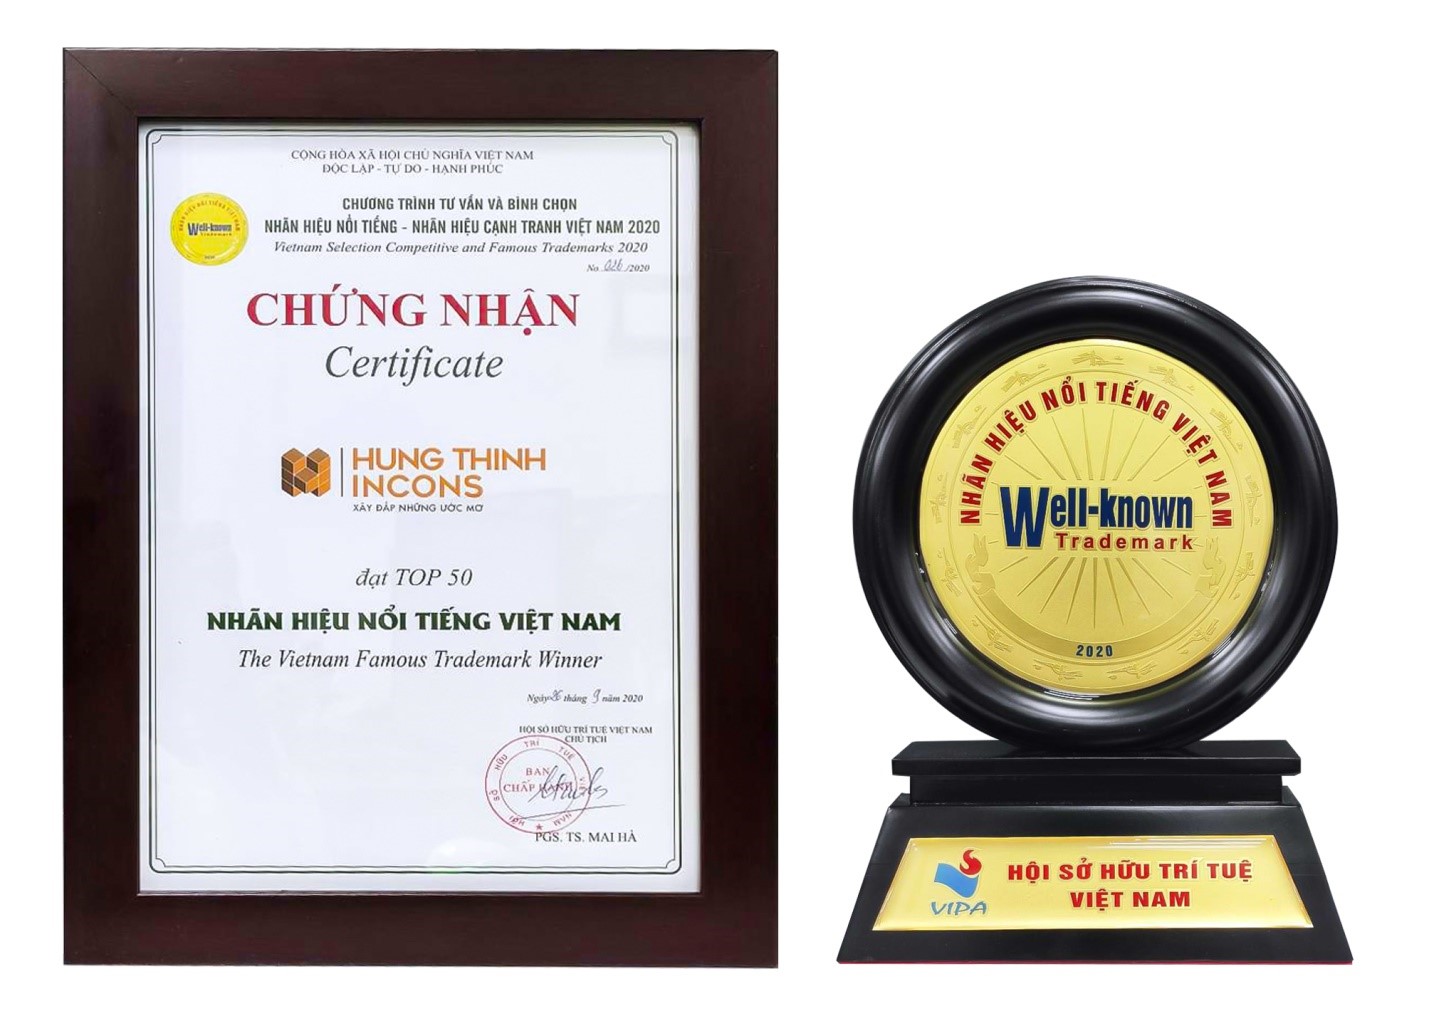 Hưng Thịnh Incons vào “Top 50 Nhãn hiệu Nổi tiếng Việt Nam năm 2020”